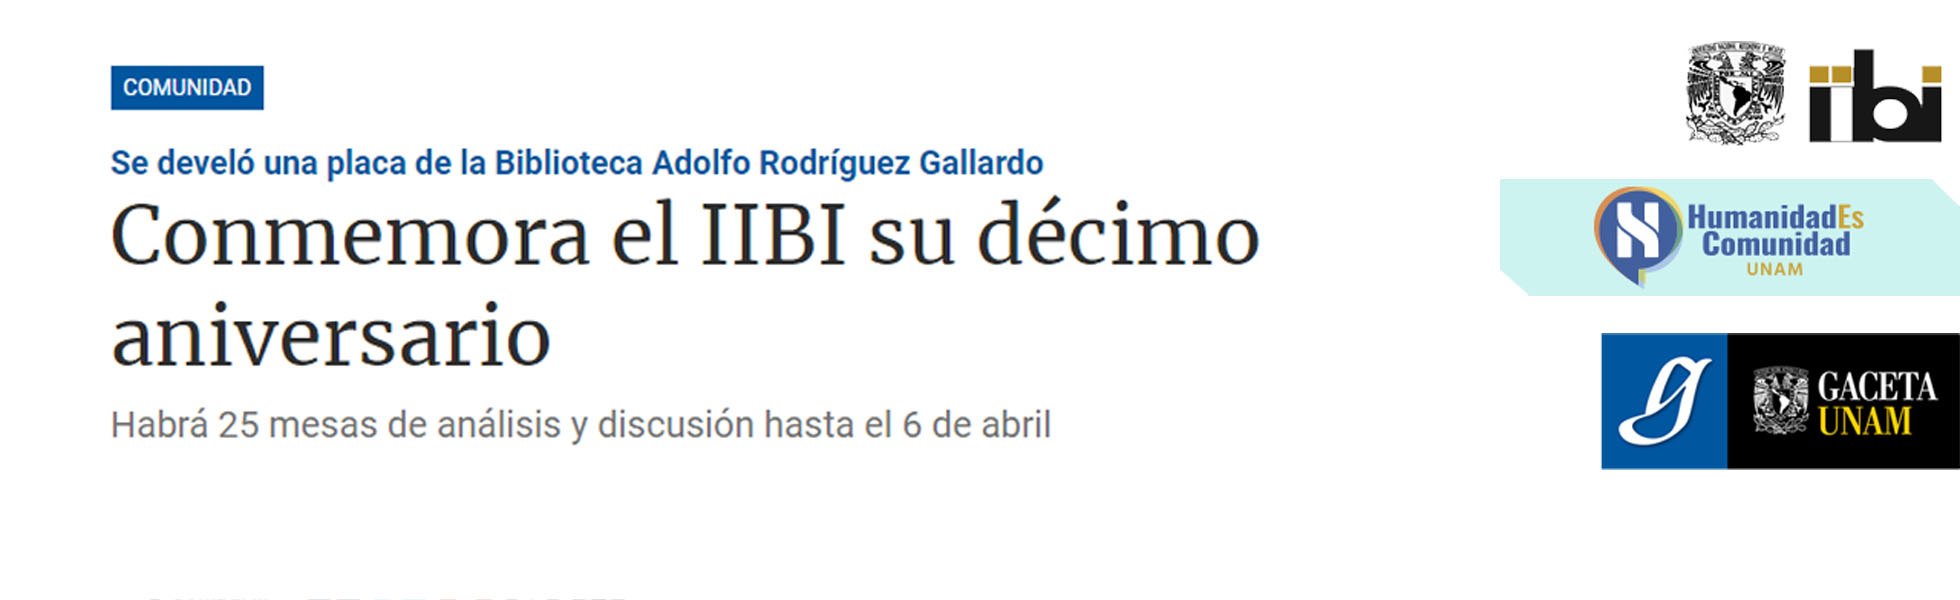 Conmemora el IIBI su décimo aniversario